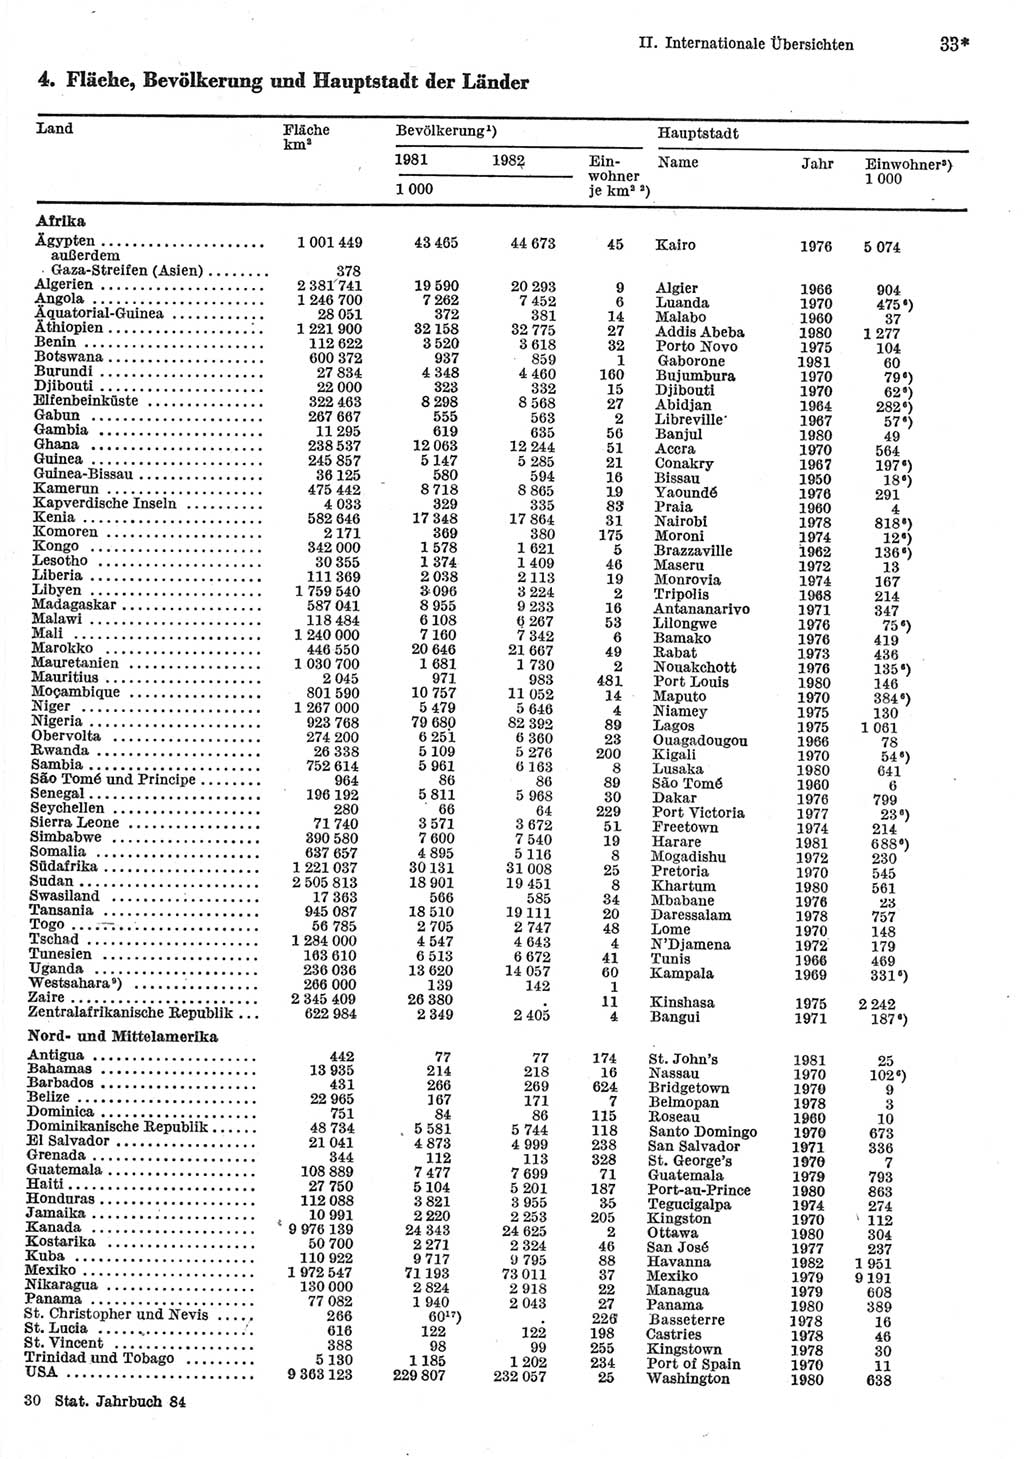 Statistisches Jahrbuch der Deutschen Demokratischen Republik (DDR) 1984, Seite 33 (Stat. Jb. DDR 1984, S. 33)